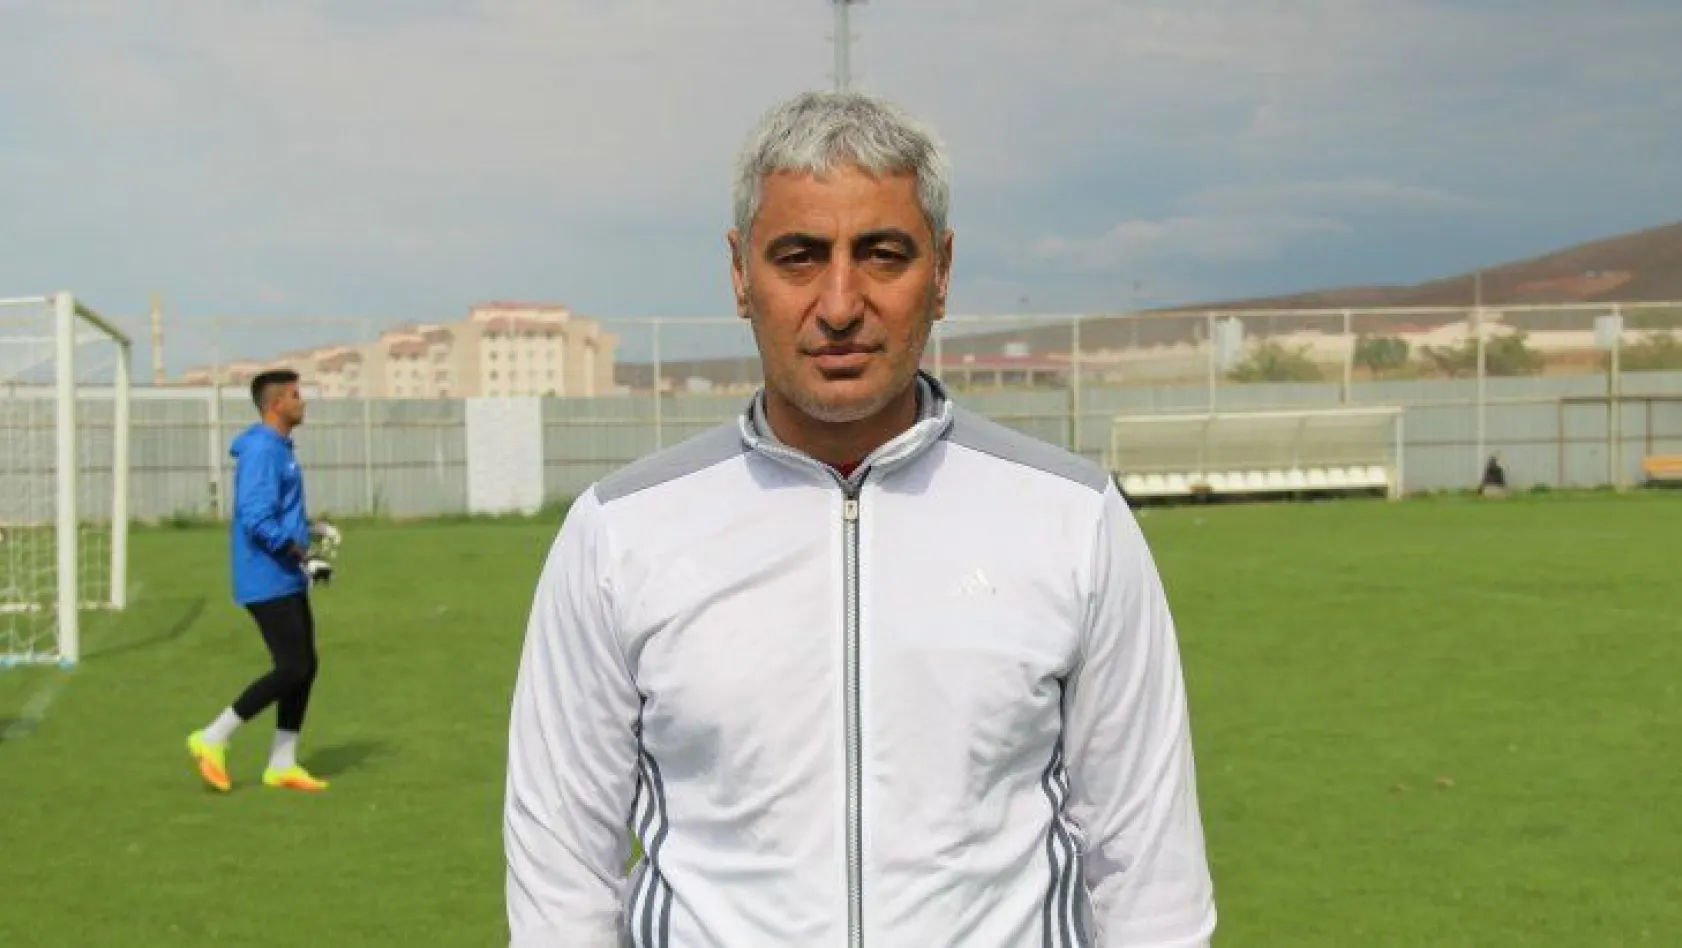 Elaziz Belediyespor, Alaattin Tutaş ile sözleşmesini uzattı